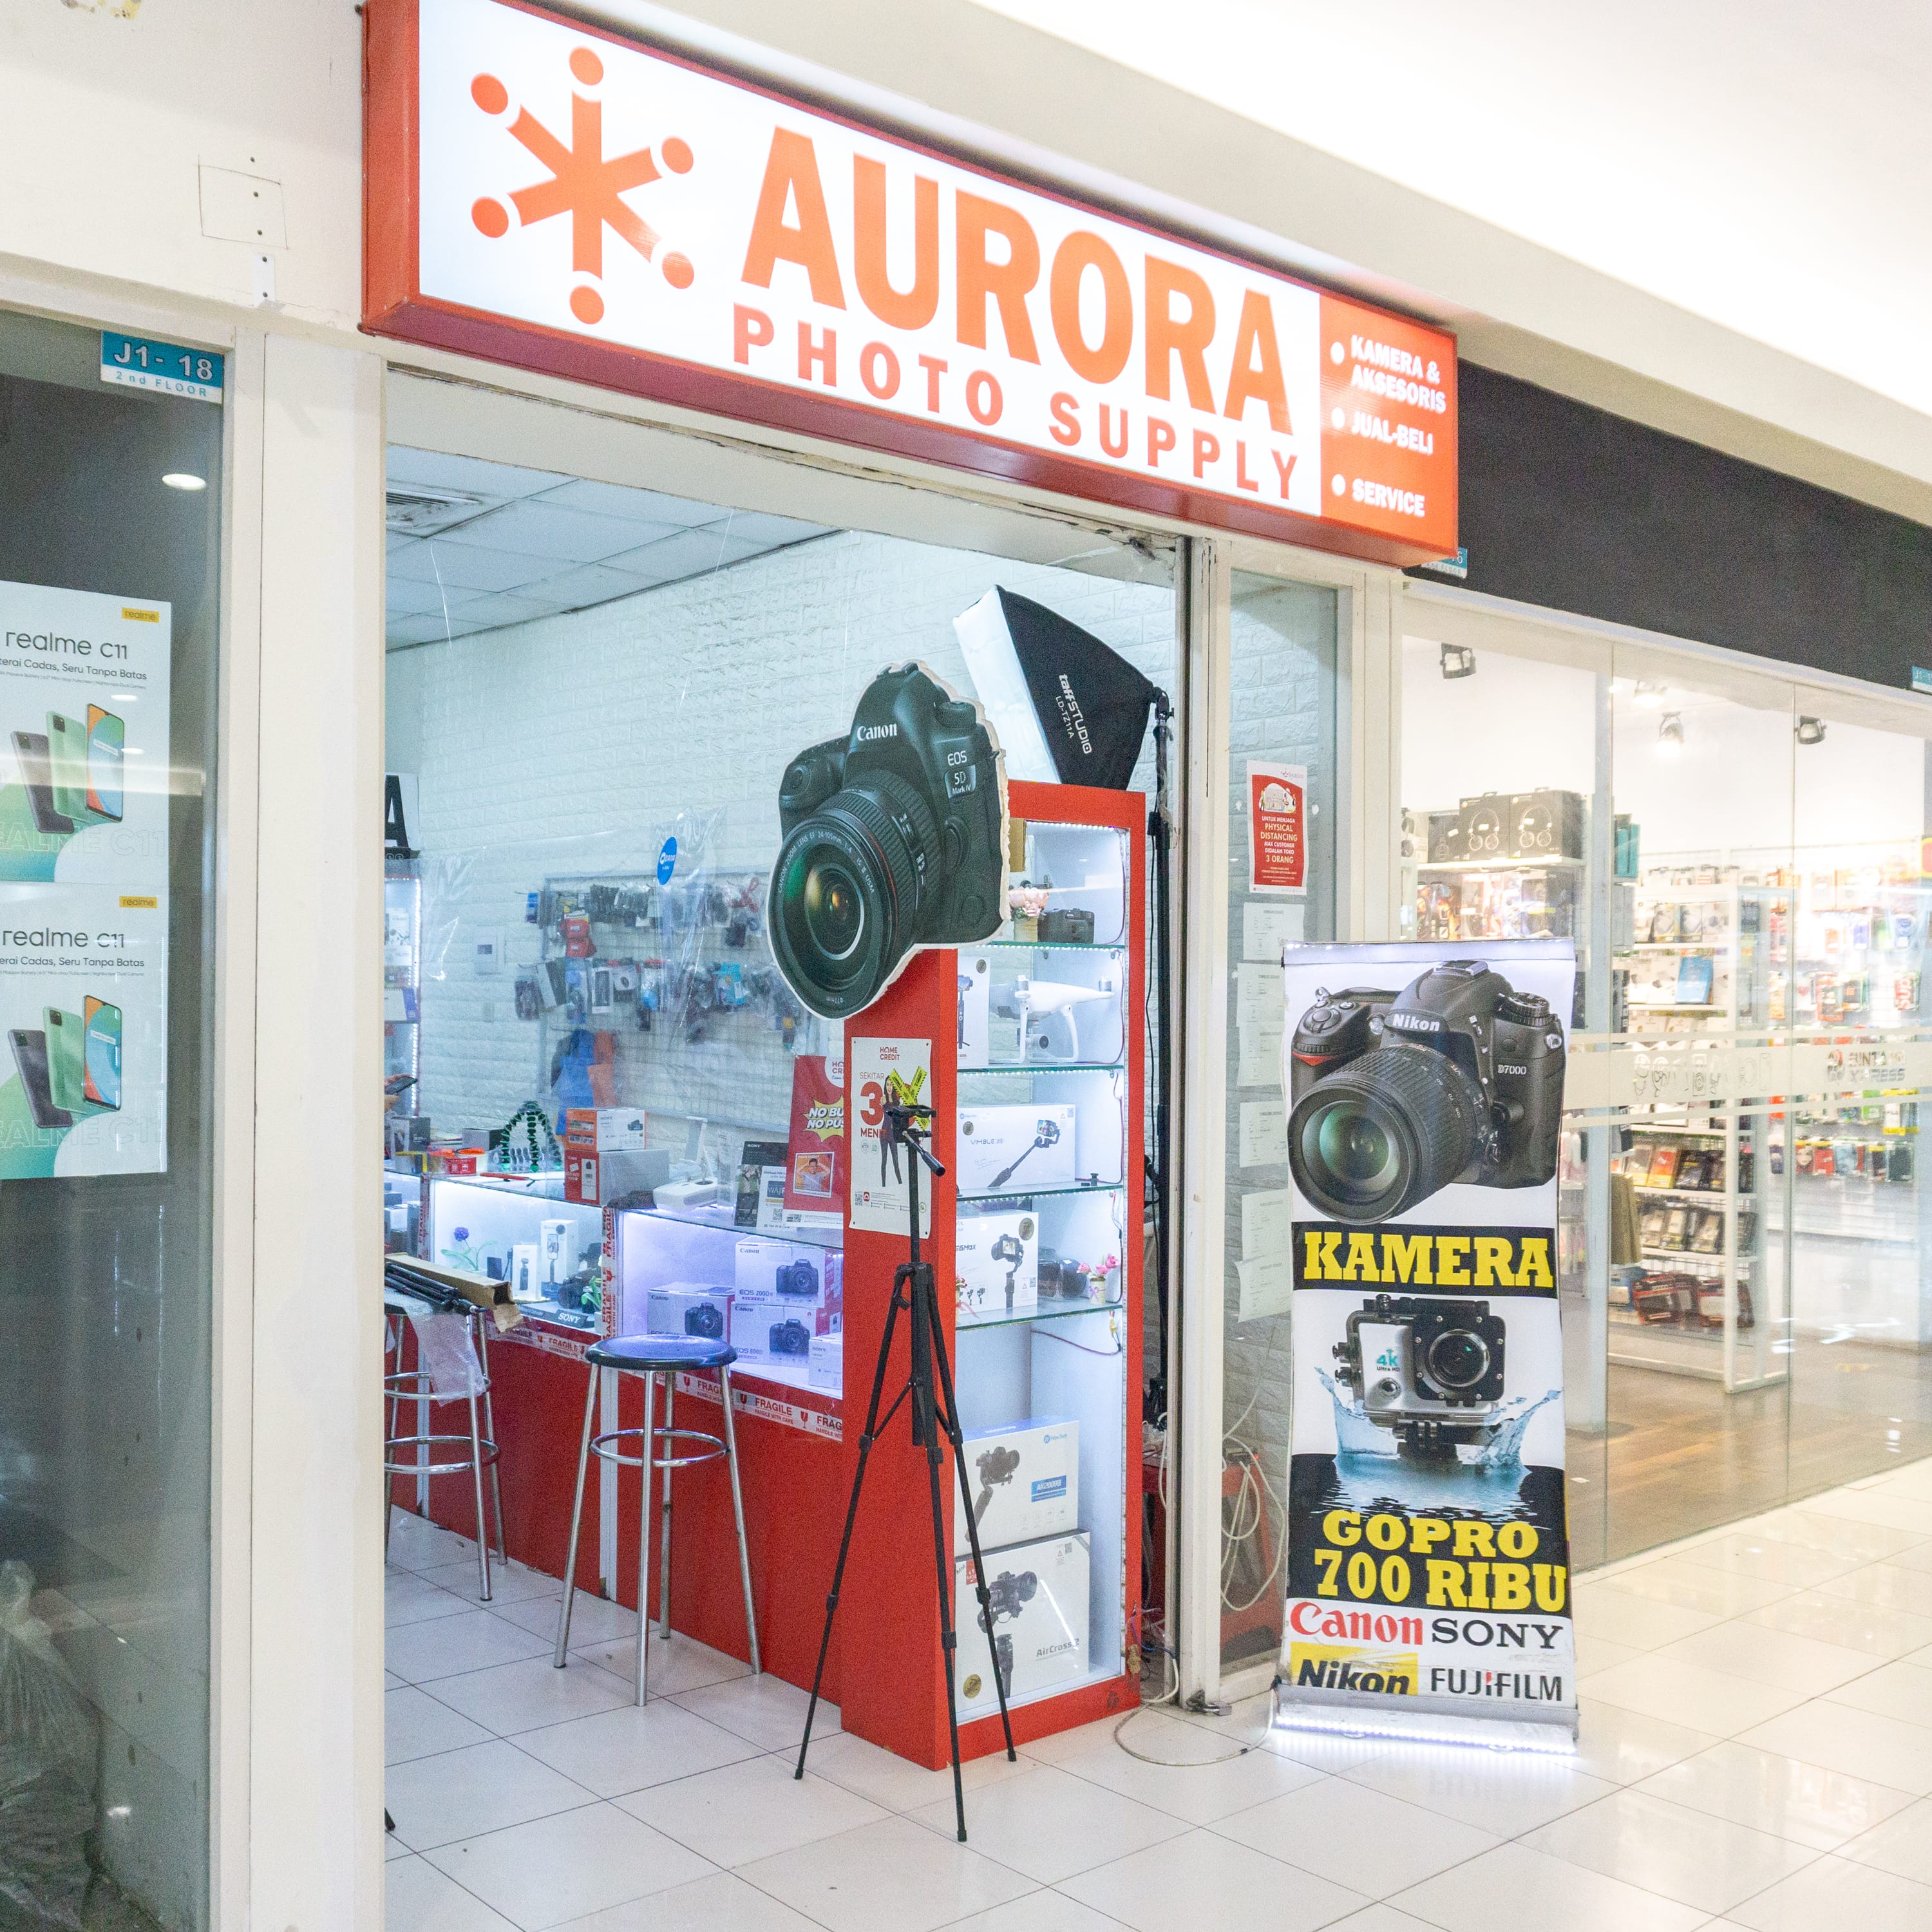 Aurora Photo Supply